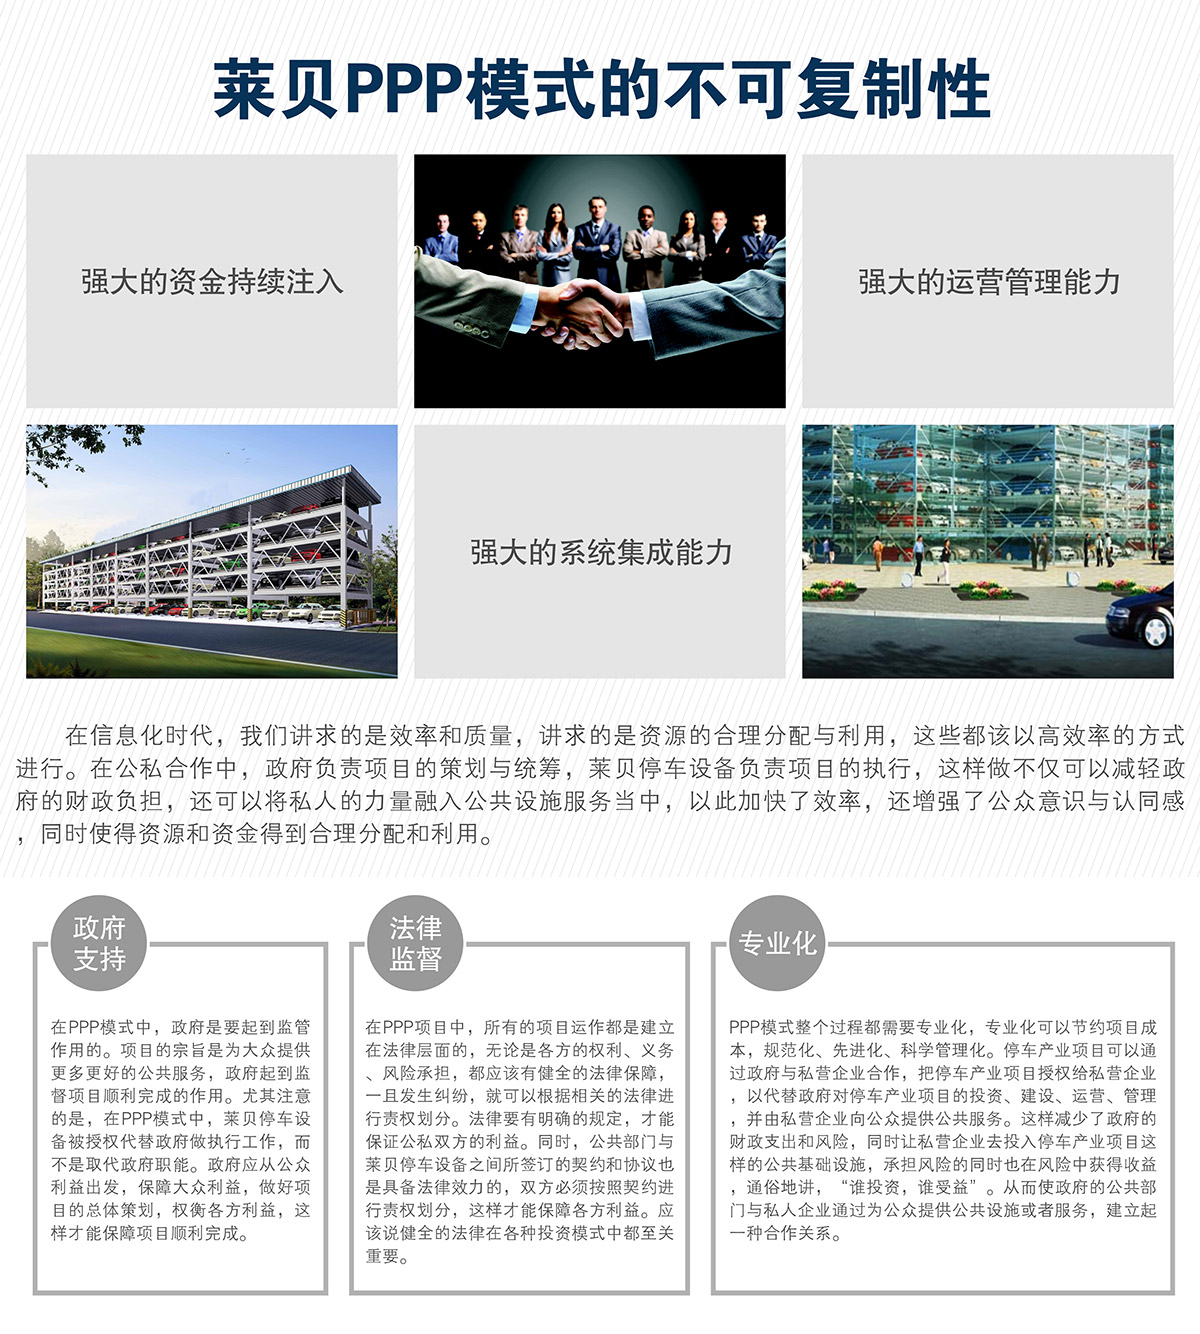 重庆莱贝立体停车场投资经营PPP模式的不可复制性.jpg